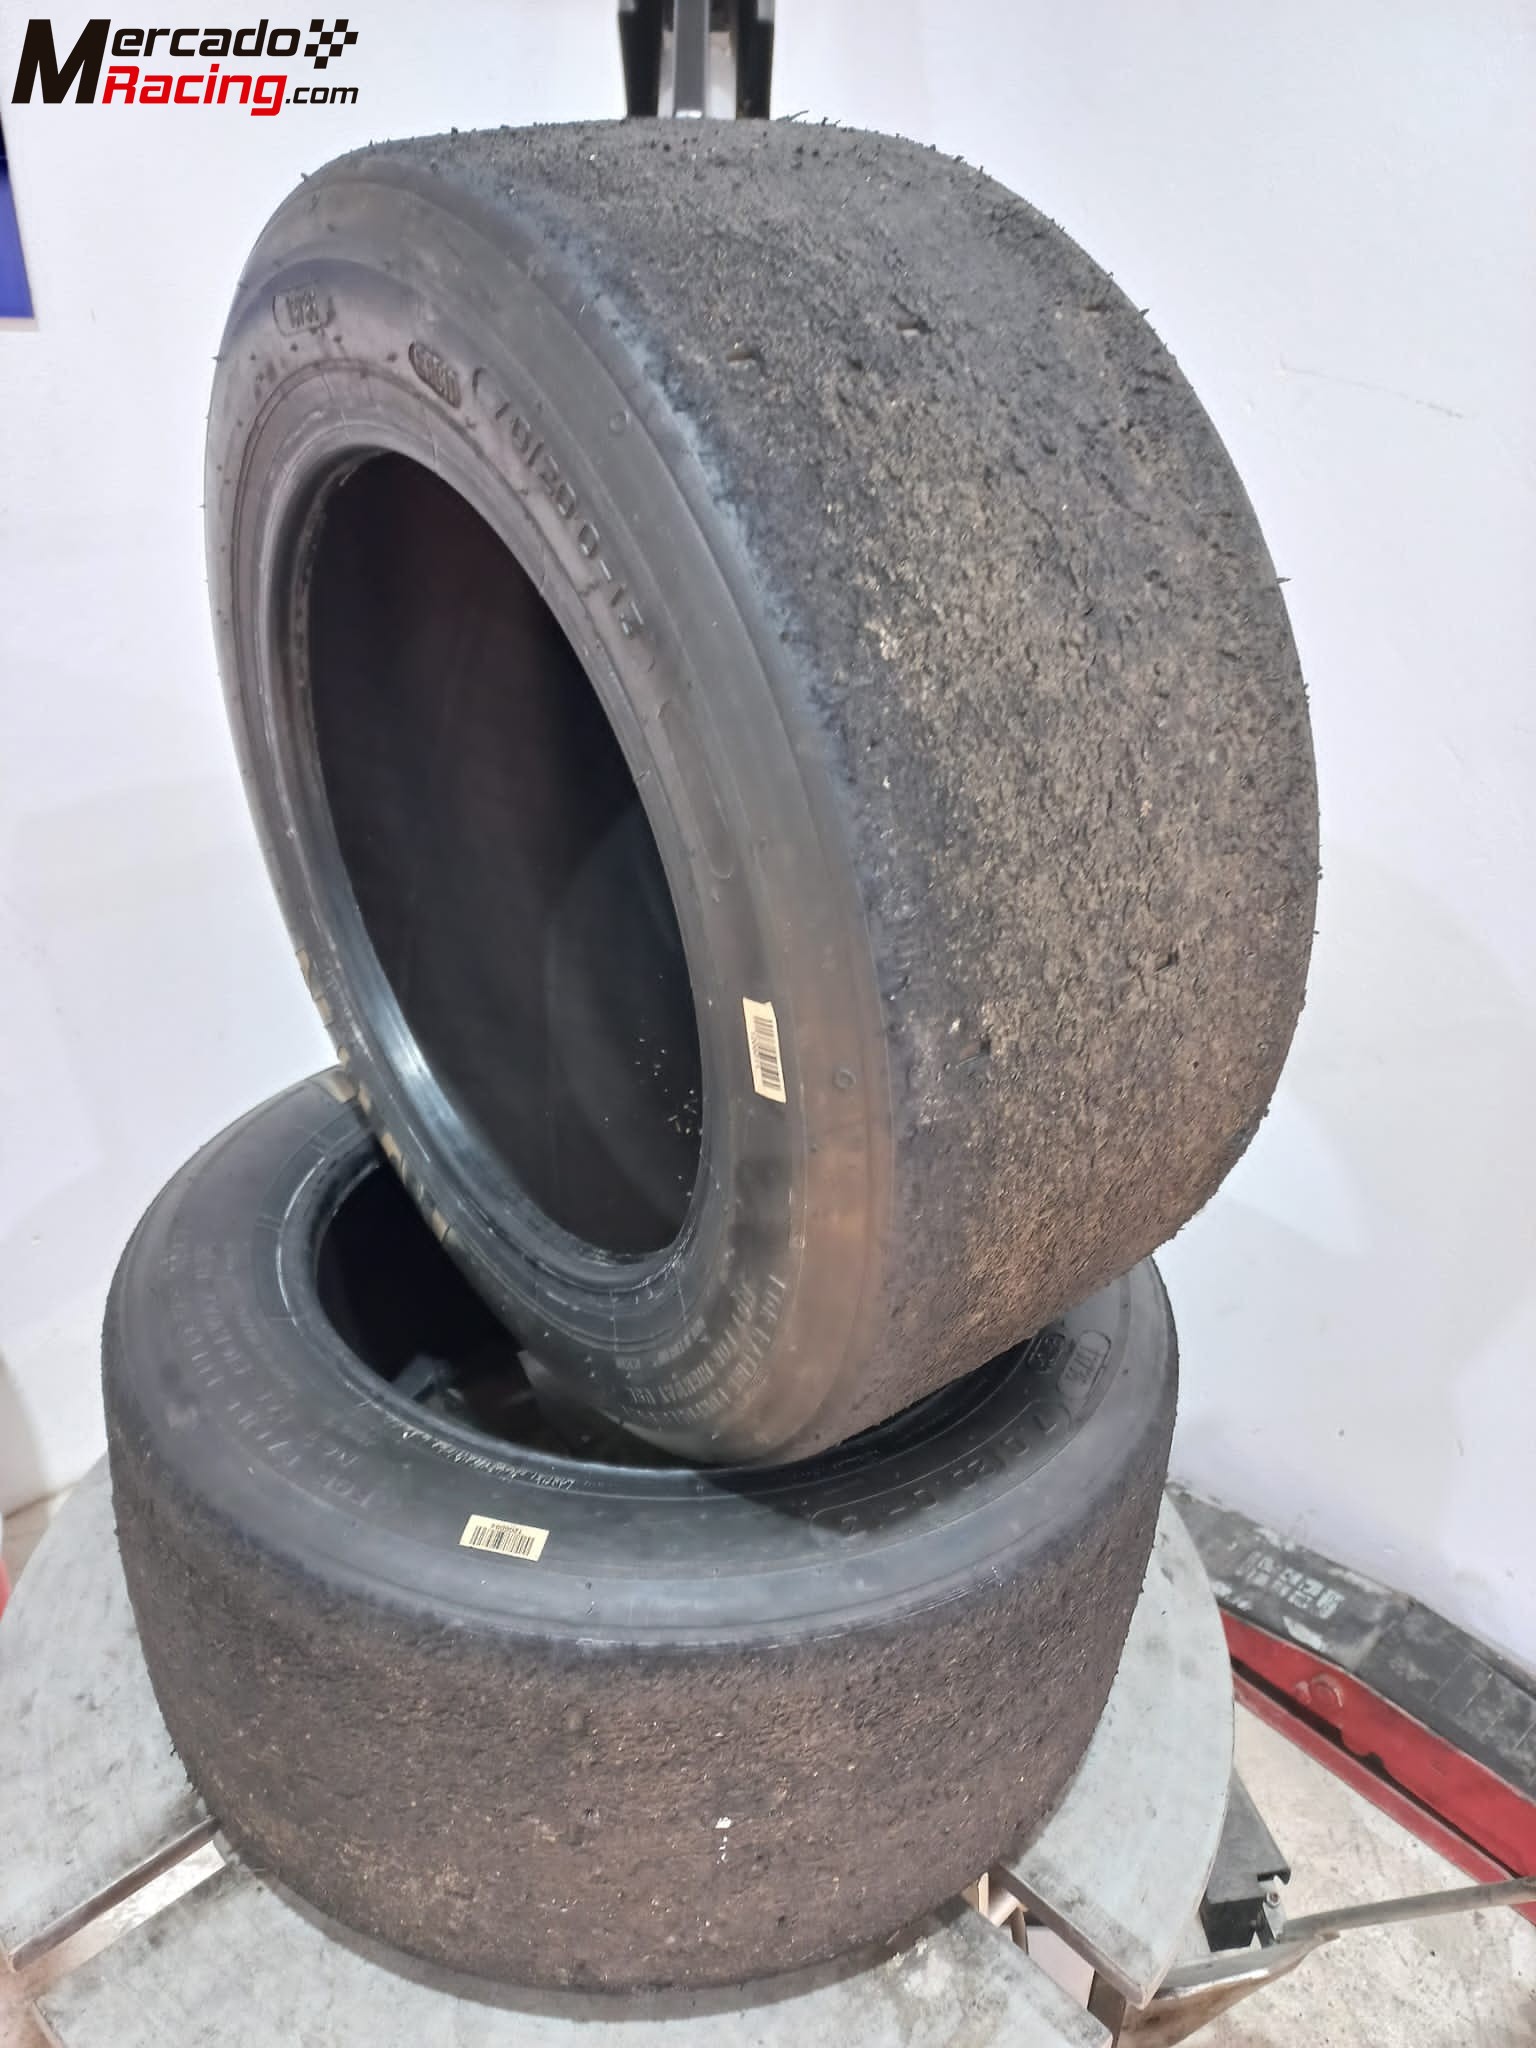 Neumáticos avon 7.0/20.0-13 y 8.2/22.0-13 al 90%